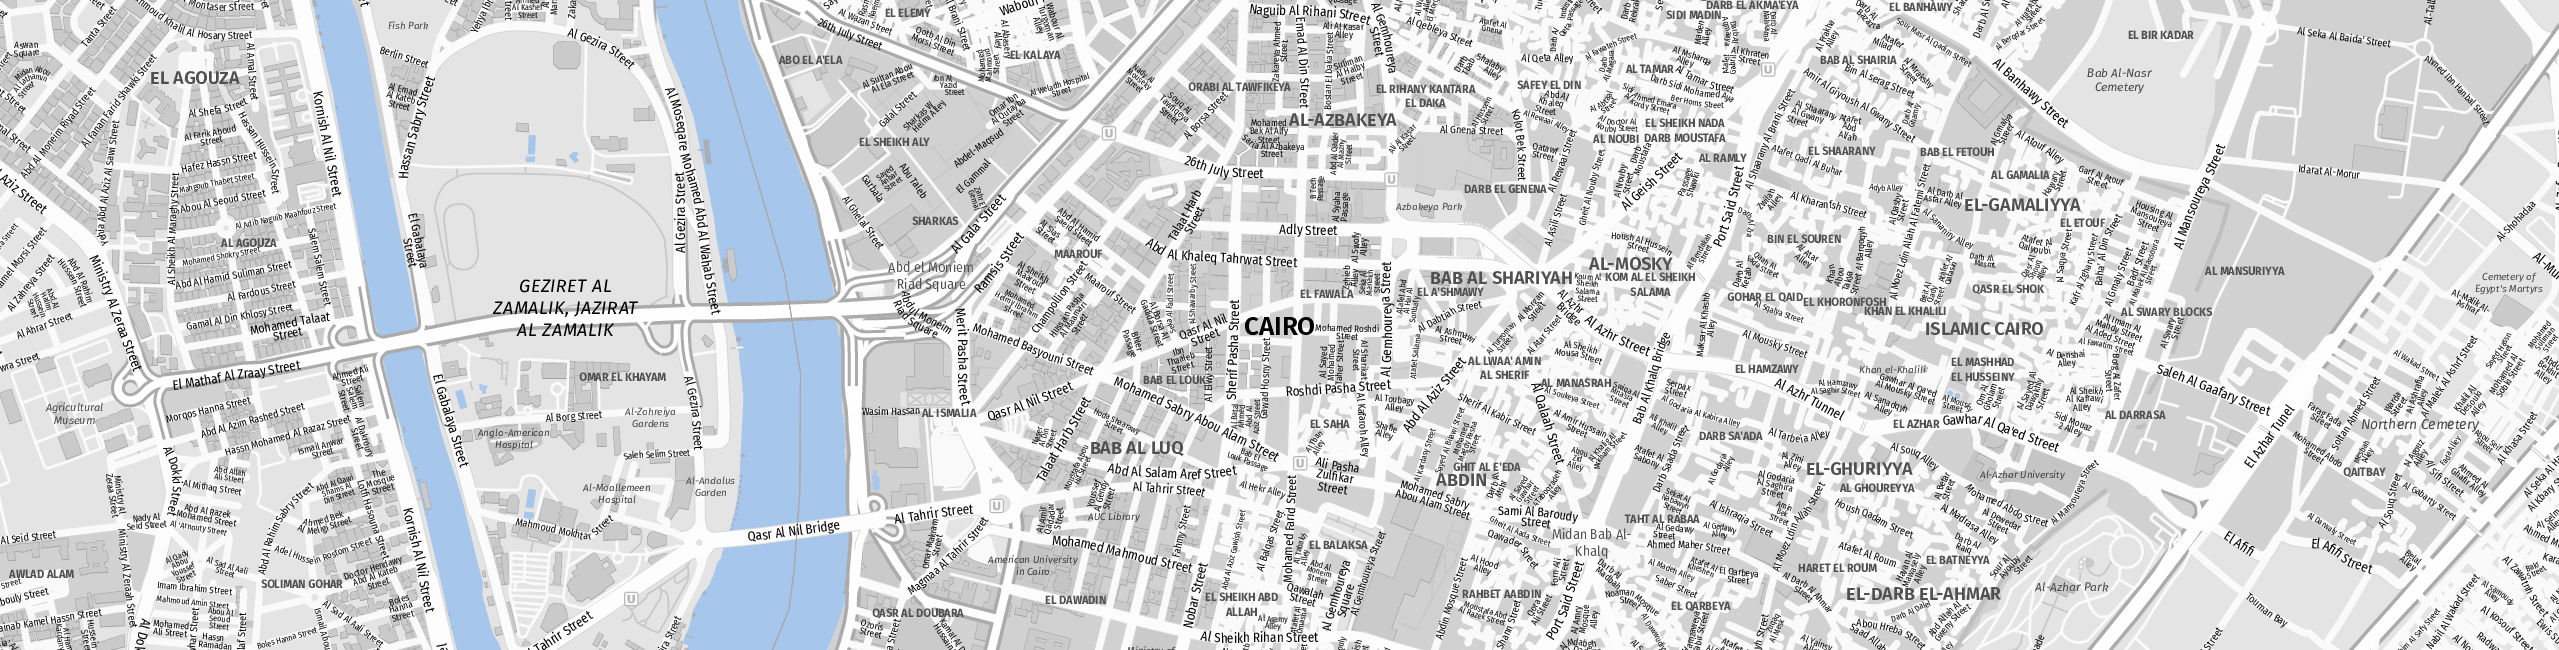 Stadtplan Cairo zum Downloaden.